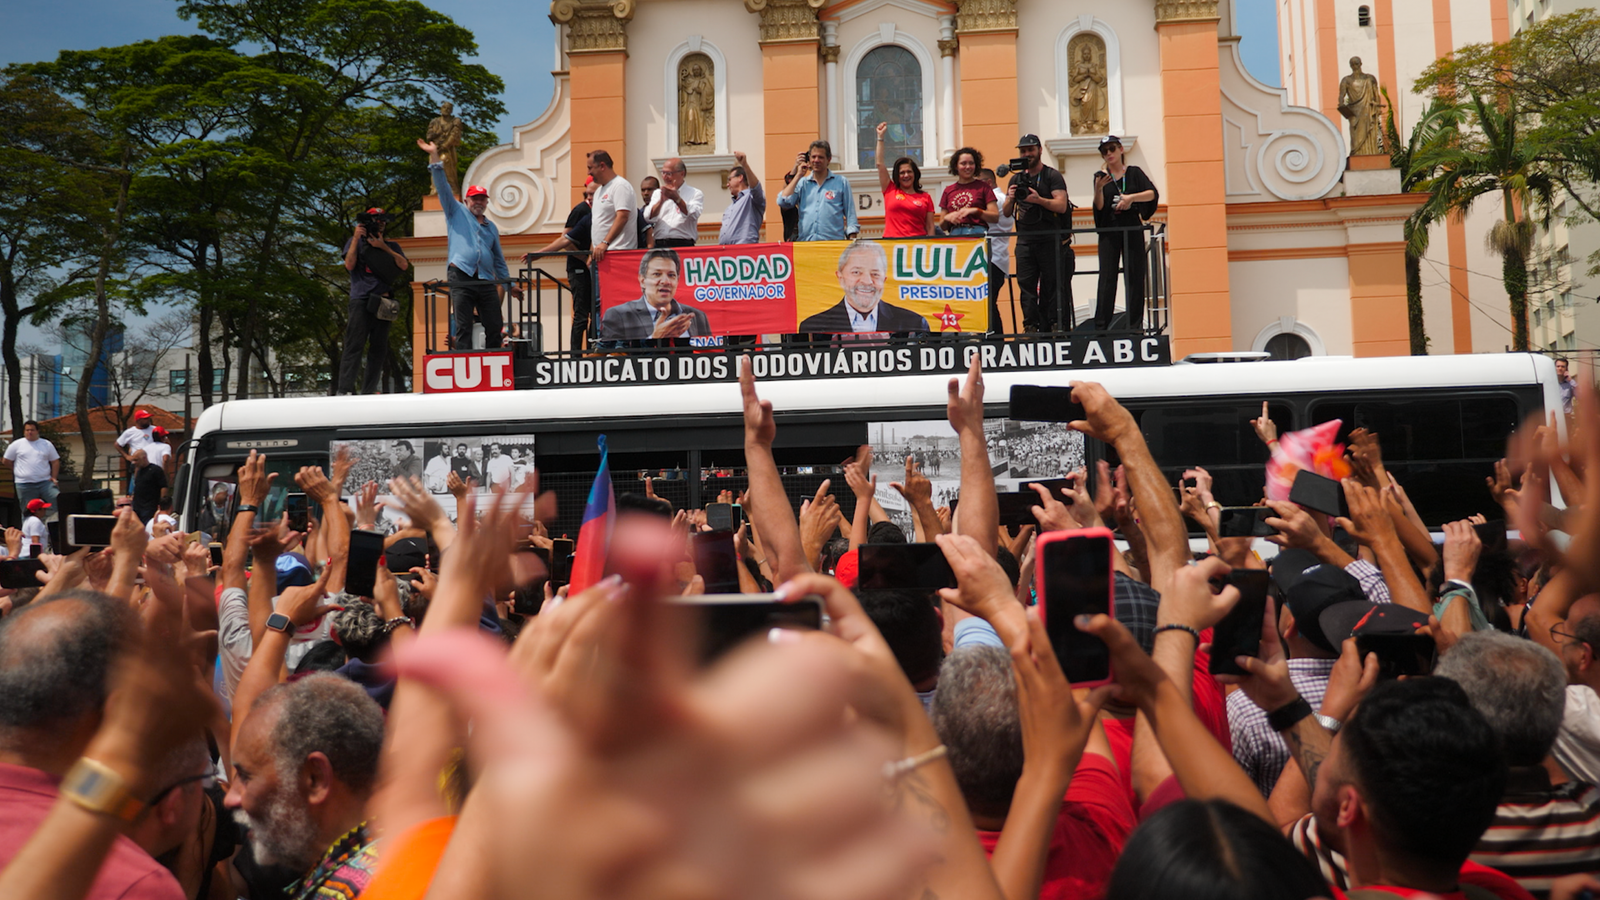 Confiance et exubérance au rallye Lula da Silva au Brésil – “Nous sommes dans une bataille et nous allons gagner” |  Nouvelles du monde